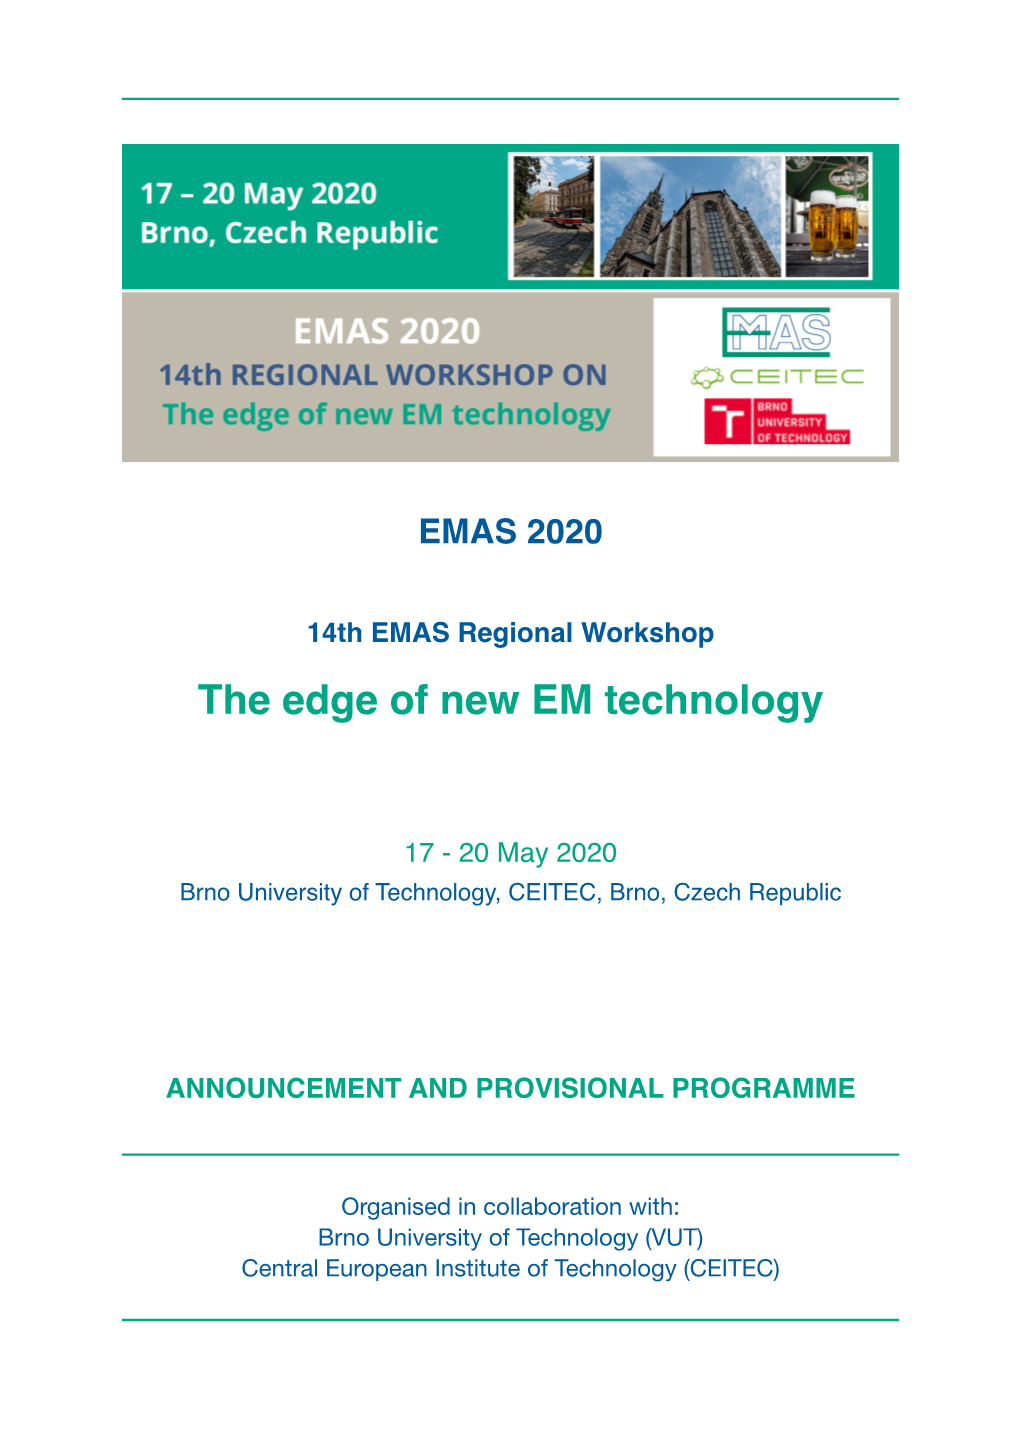 EMAS 2020 Regional Workshop